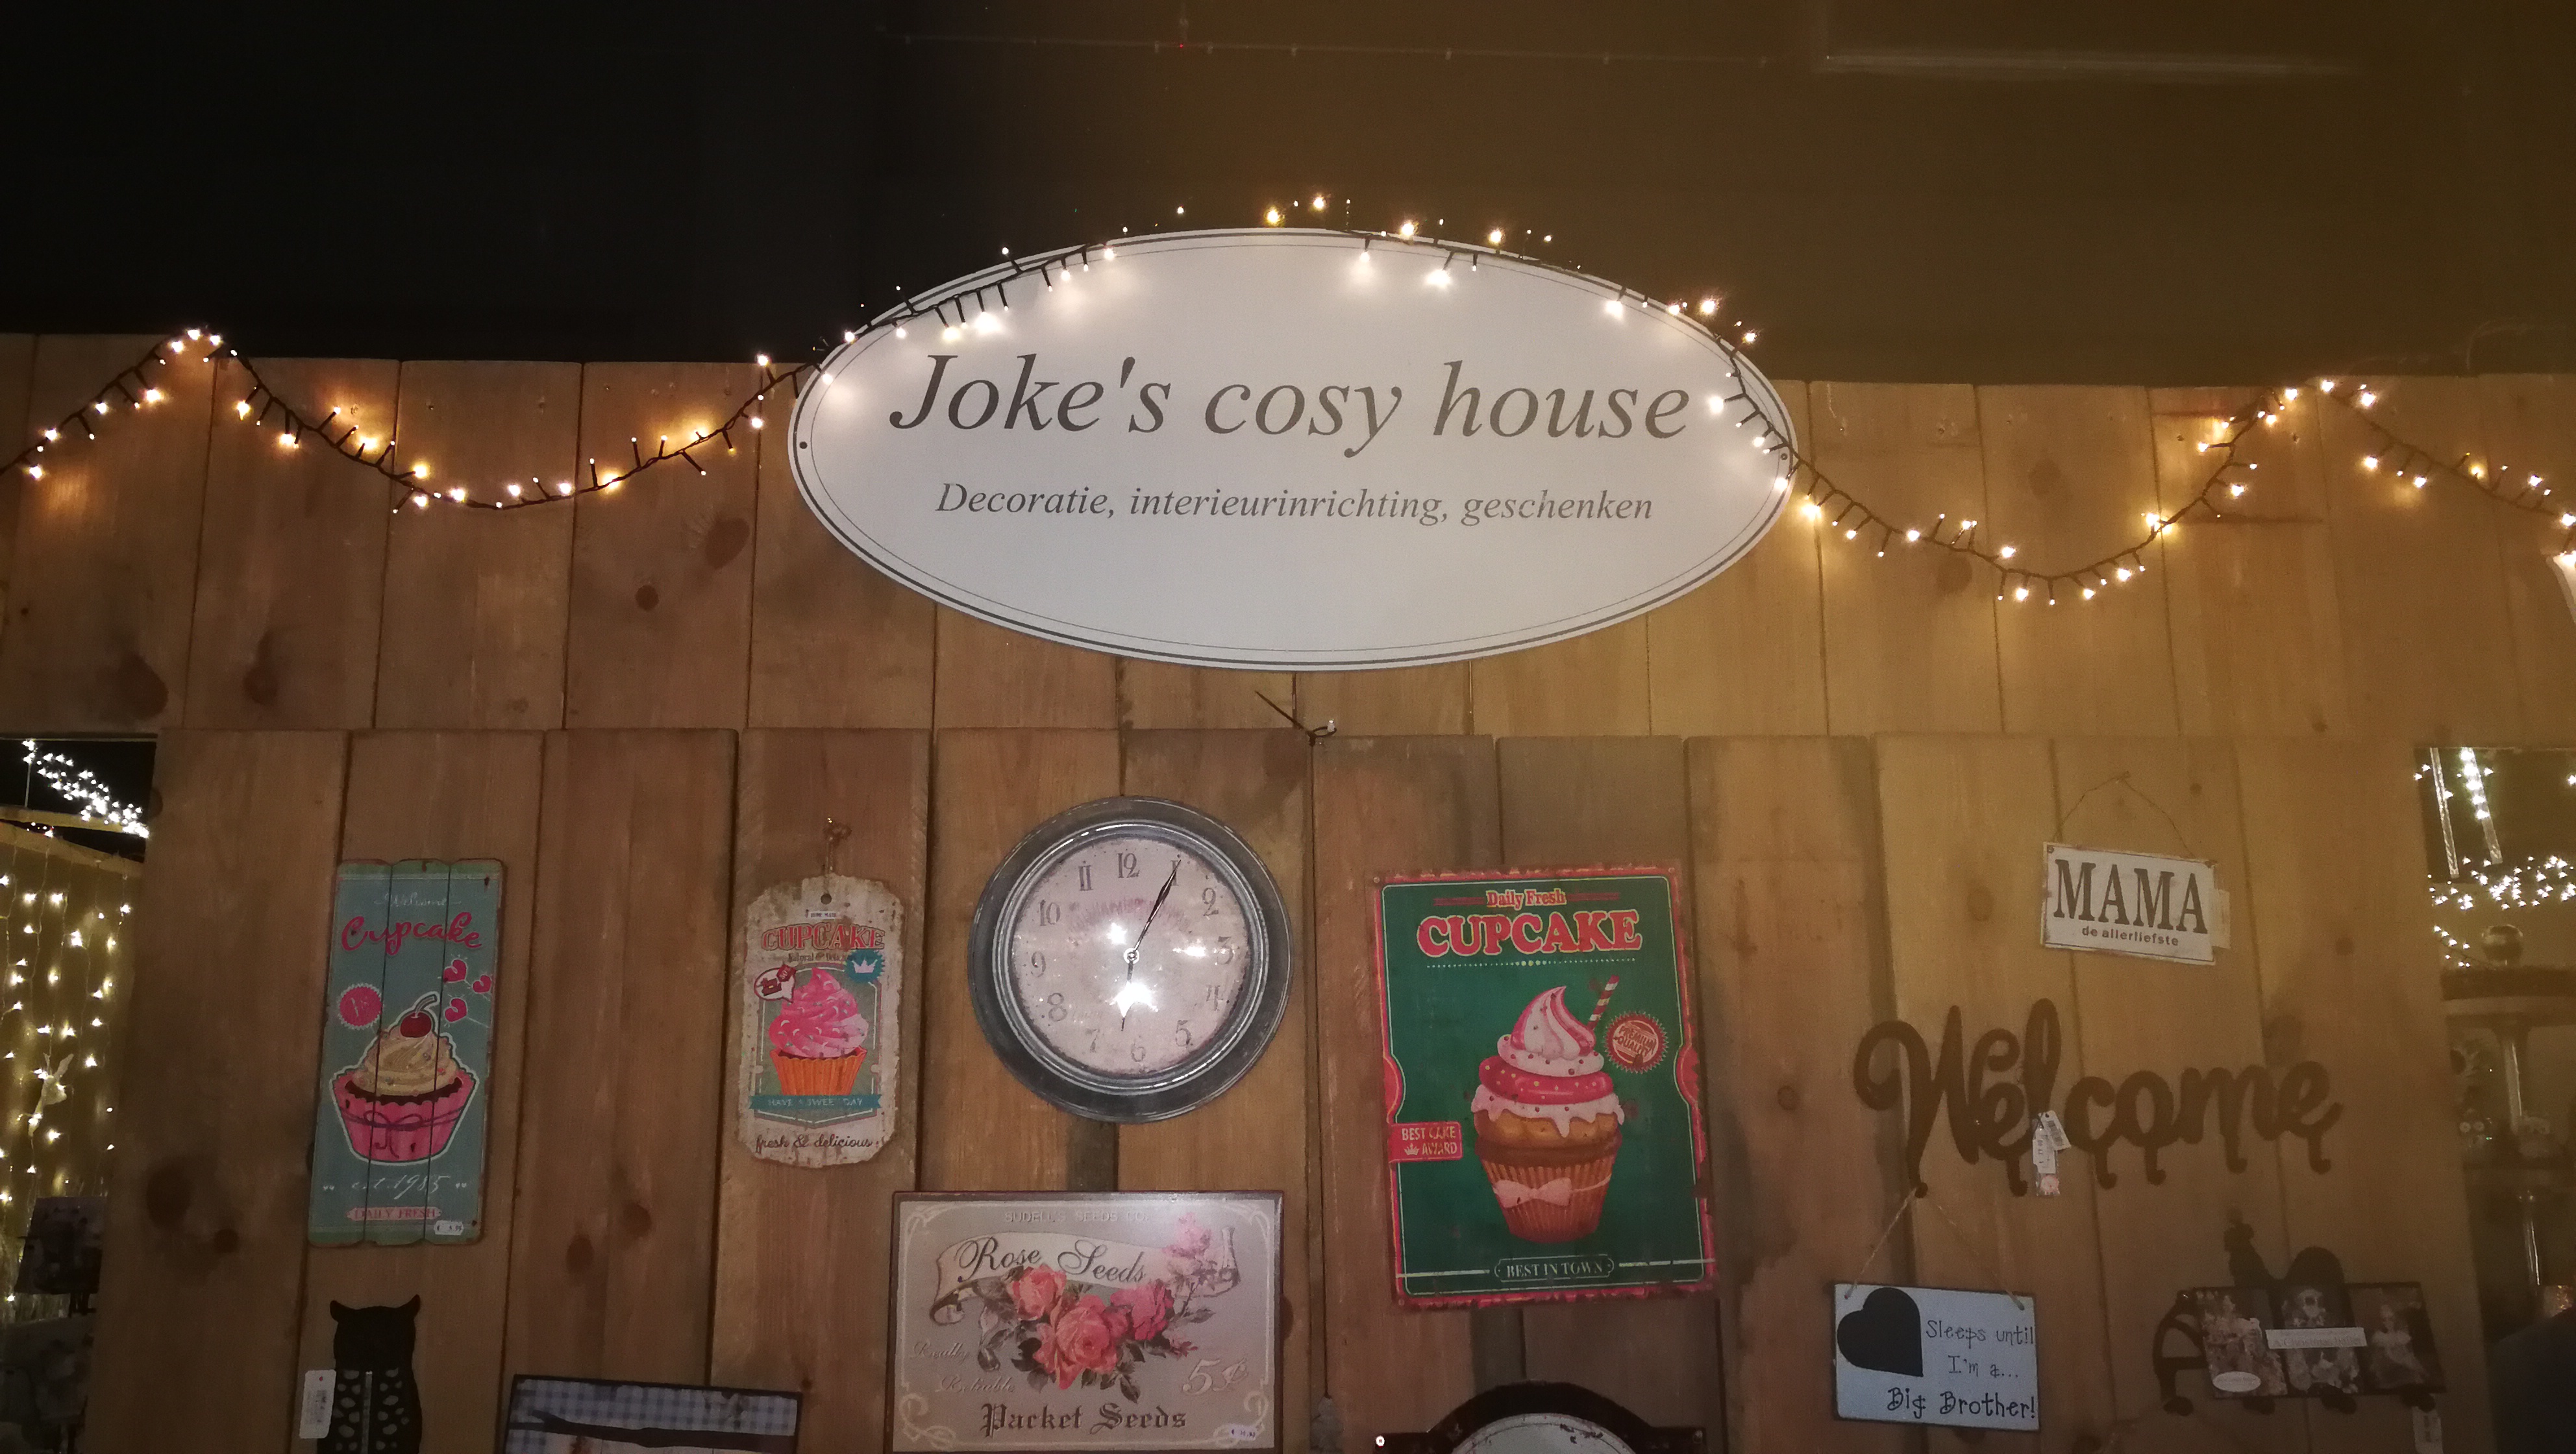 Joke's cosy house op Countryside - Het Nieuwsblad